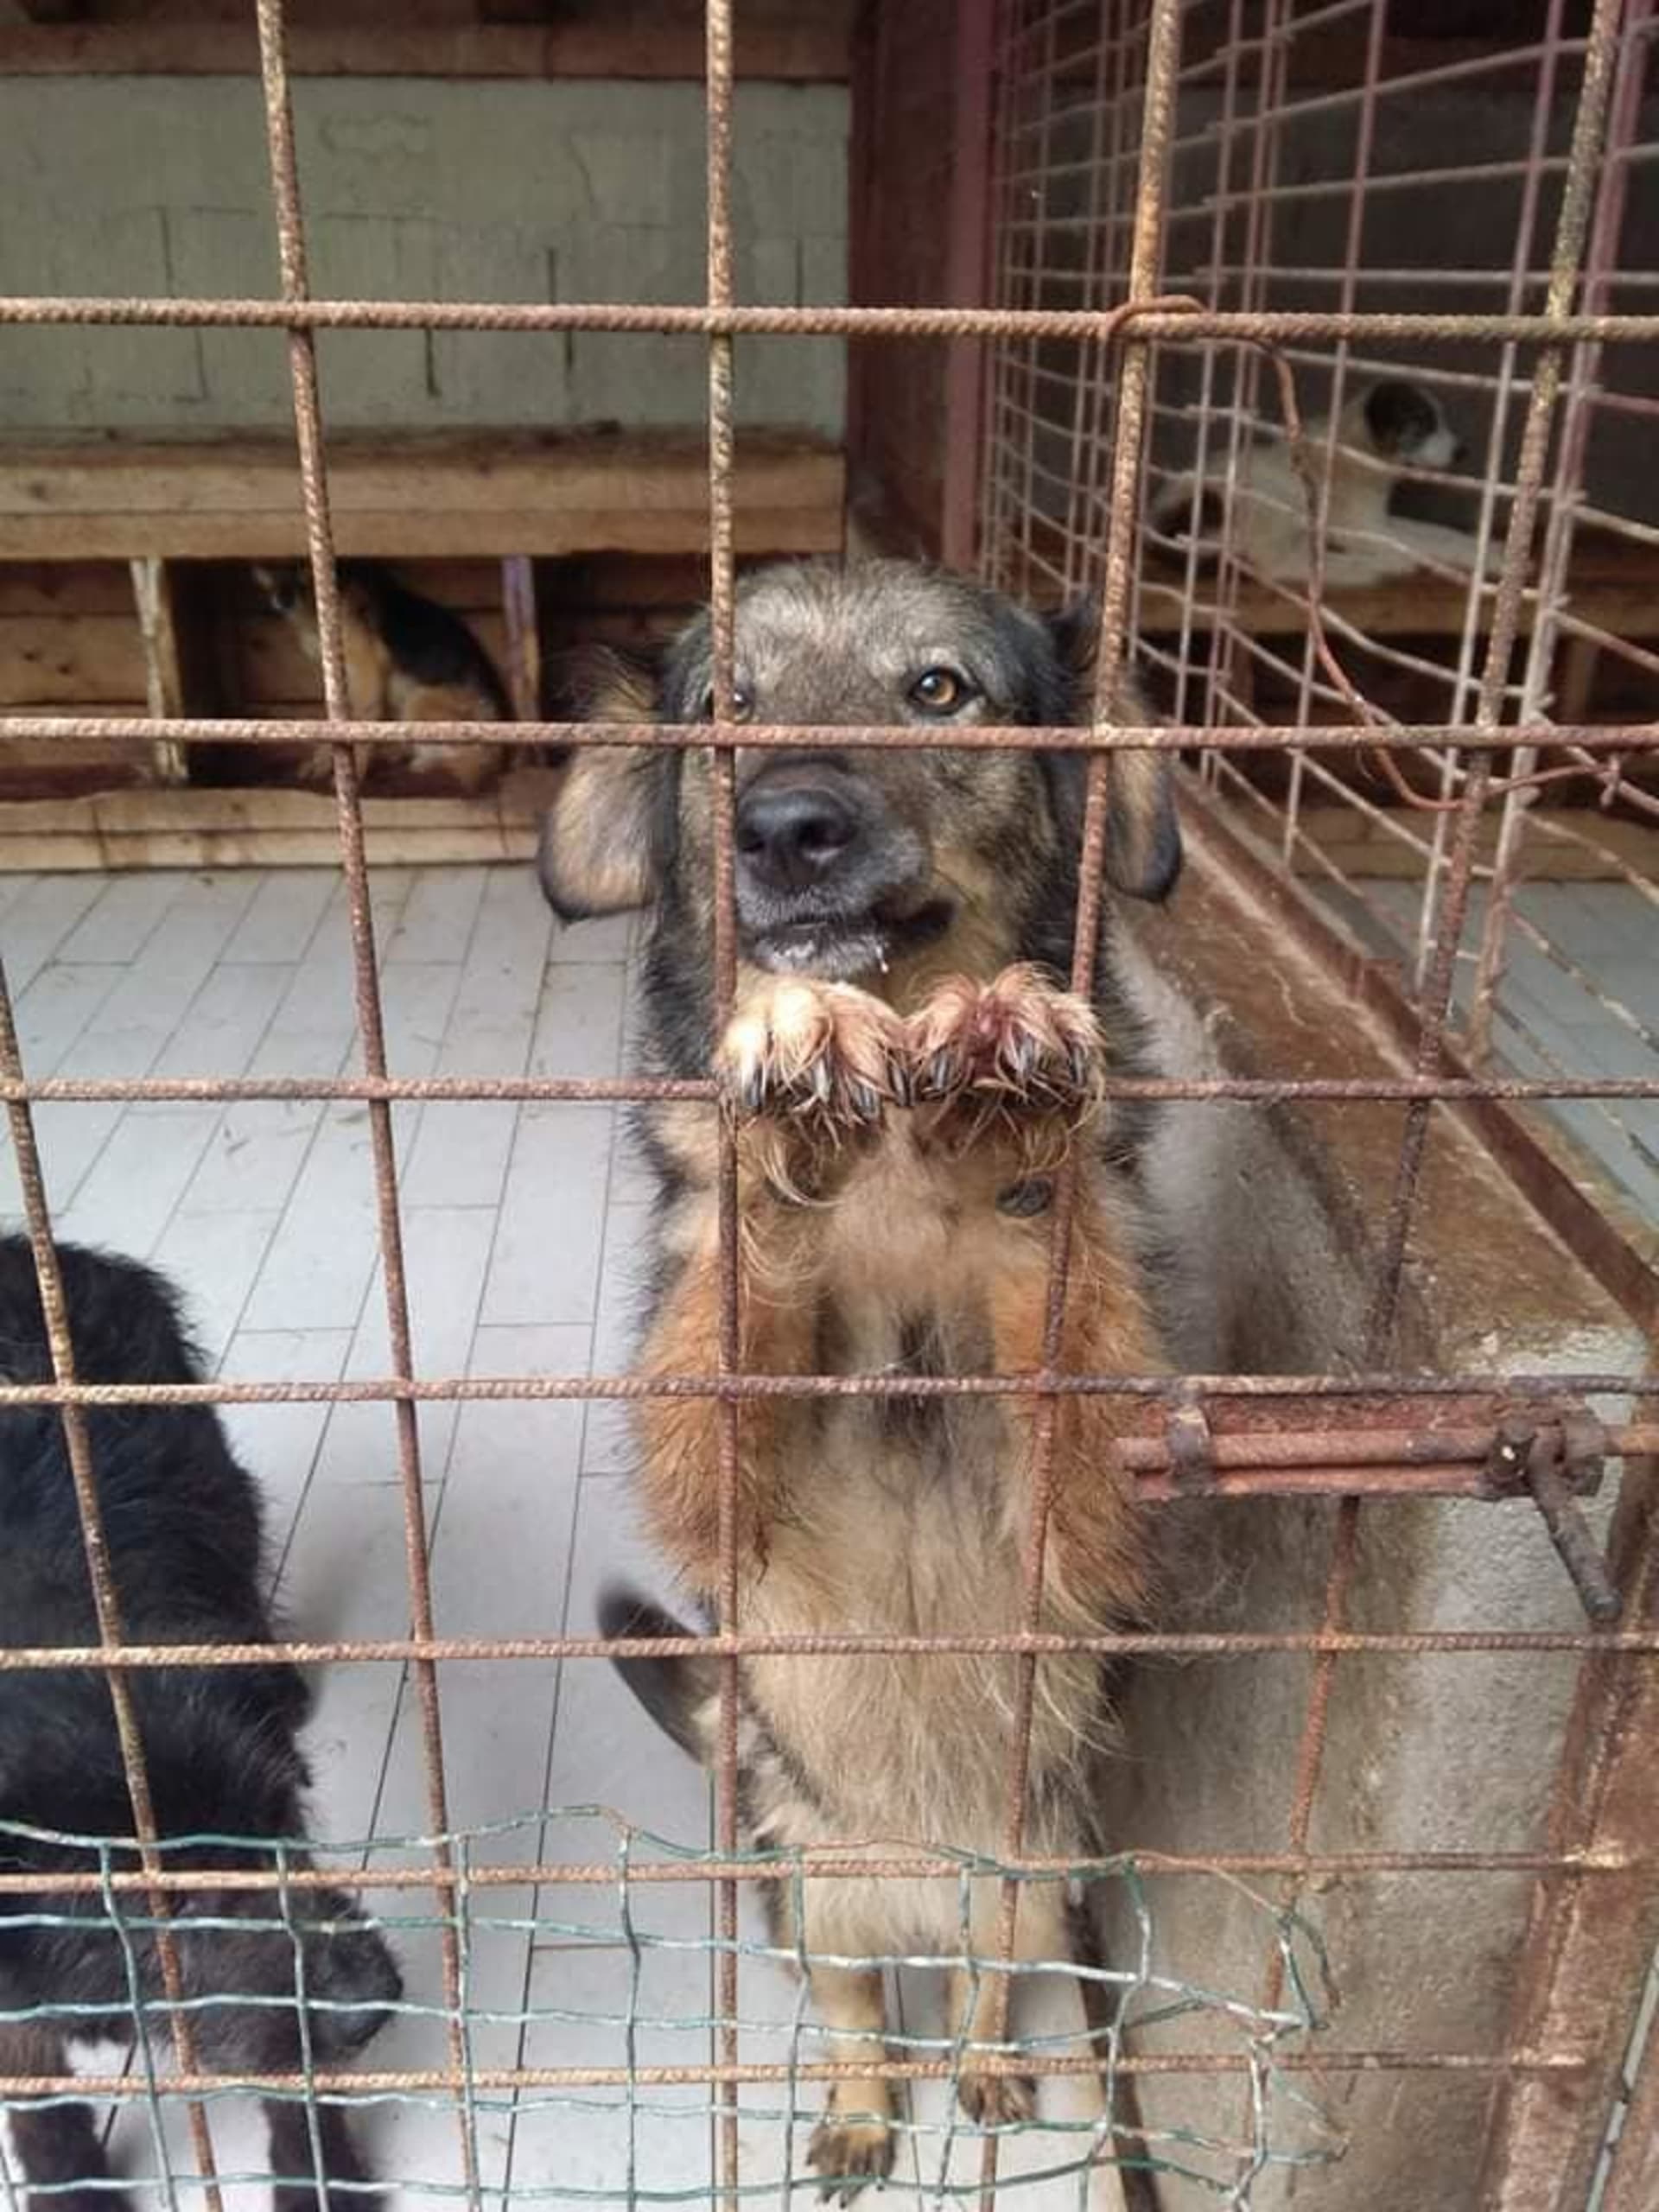 Pes ve státním útulku. Heart for Romanian dogs z.s. se snaží řešit situaci na místě a podporovat soukromé azyly, které mají snahu psy zachraňovat z otřesných podmínek / Heart for Romanian dogs z.s.